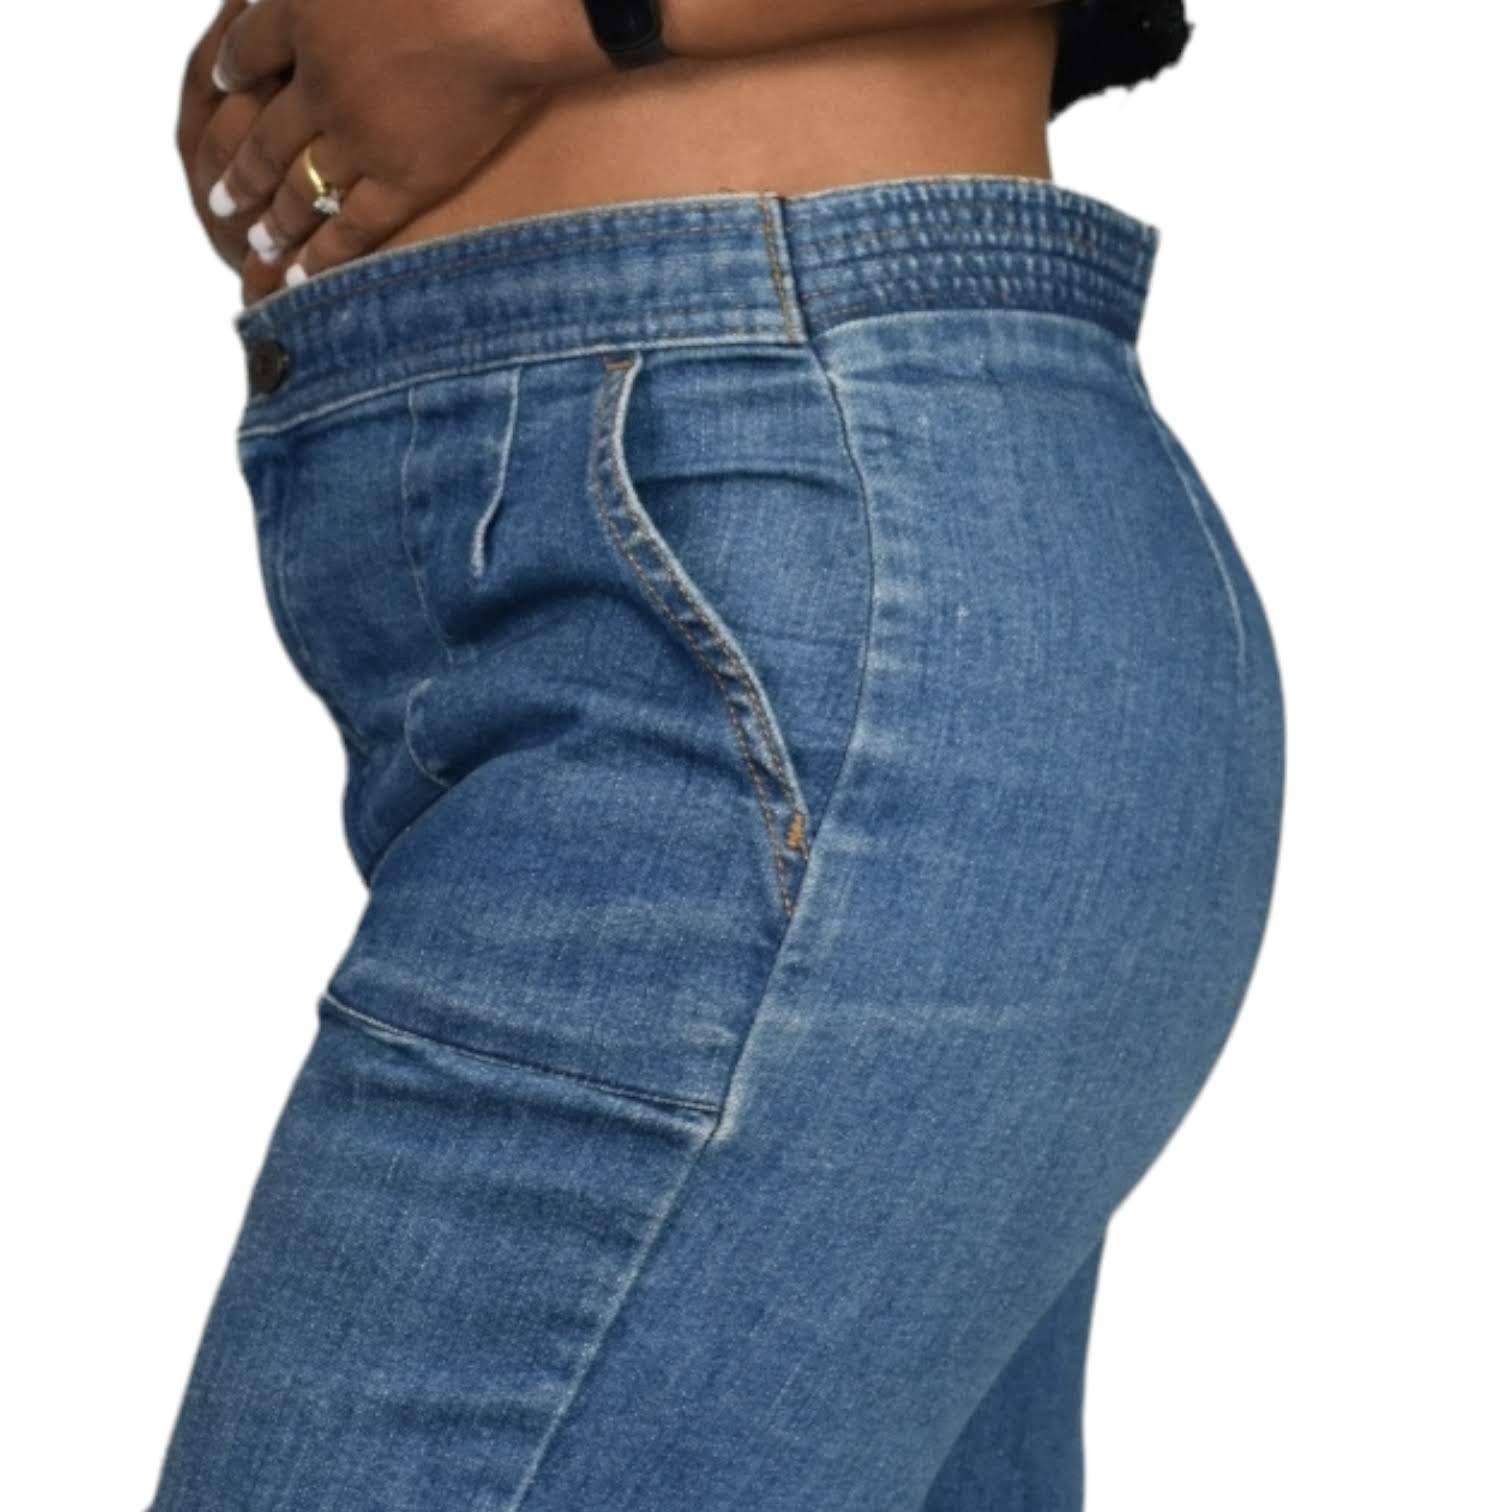 Vintage Levis Jeans Orange Tab Wide Leg Trouser Denim Cotton Bareback High Waist 70s 80s Size 29 30